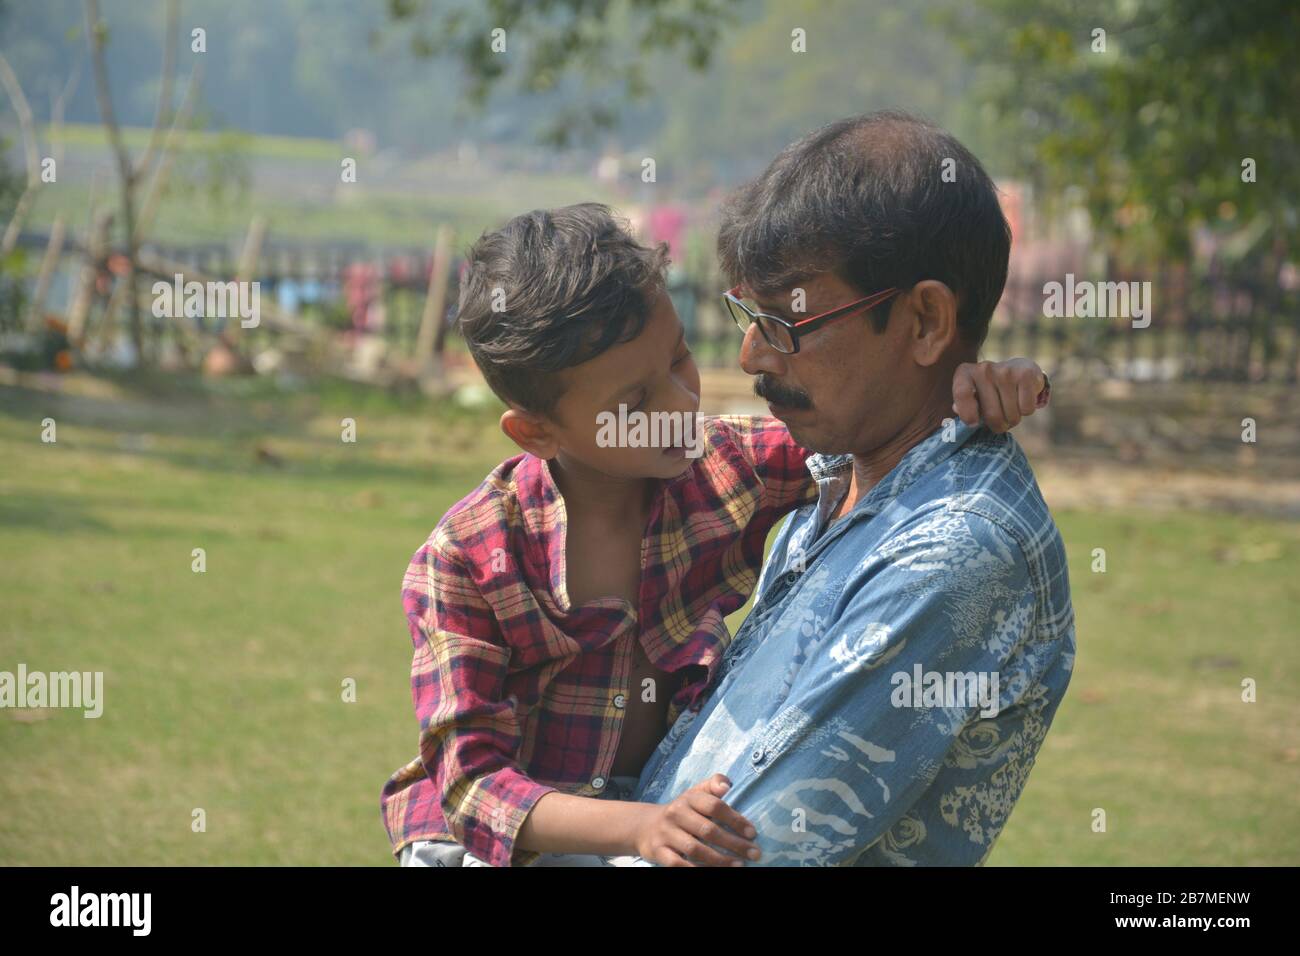 Nahaufnahme eines Mannes, der einen jungen Jungen in der Nähe seiner Brust hält, Runde mit Brille in einem Park, selektive Fokussierung Stockfoto